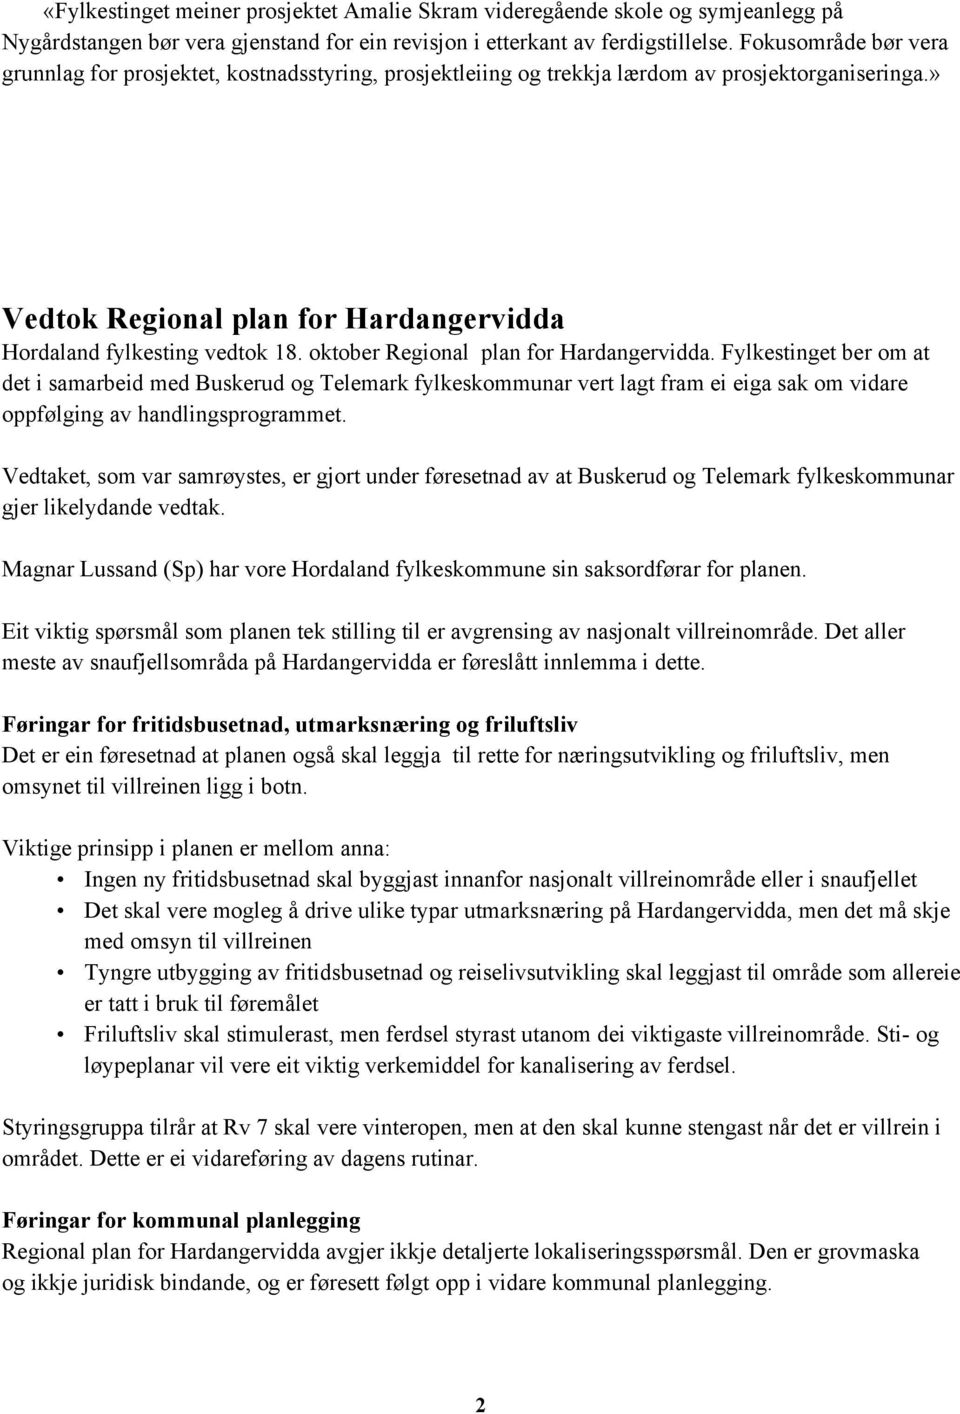 oktober Regional plan for Hardangervidda. Fylkestinget ber om at det i samarbeid med Buskerud og Telemark fylkeskommunar vert lagt fram ei eiga sak om vidare oppfølging av handlingsprogrammet.